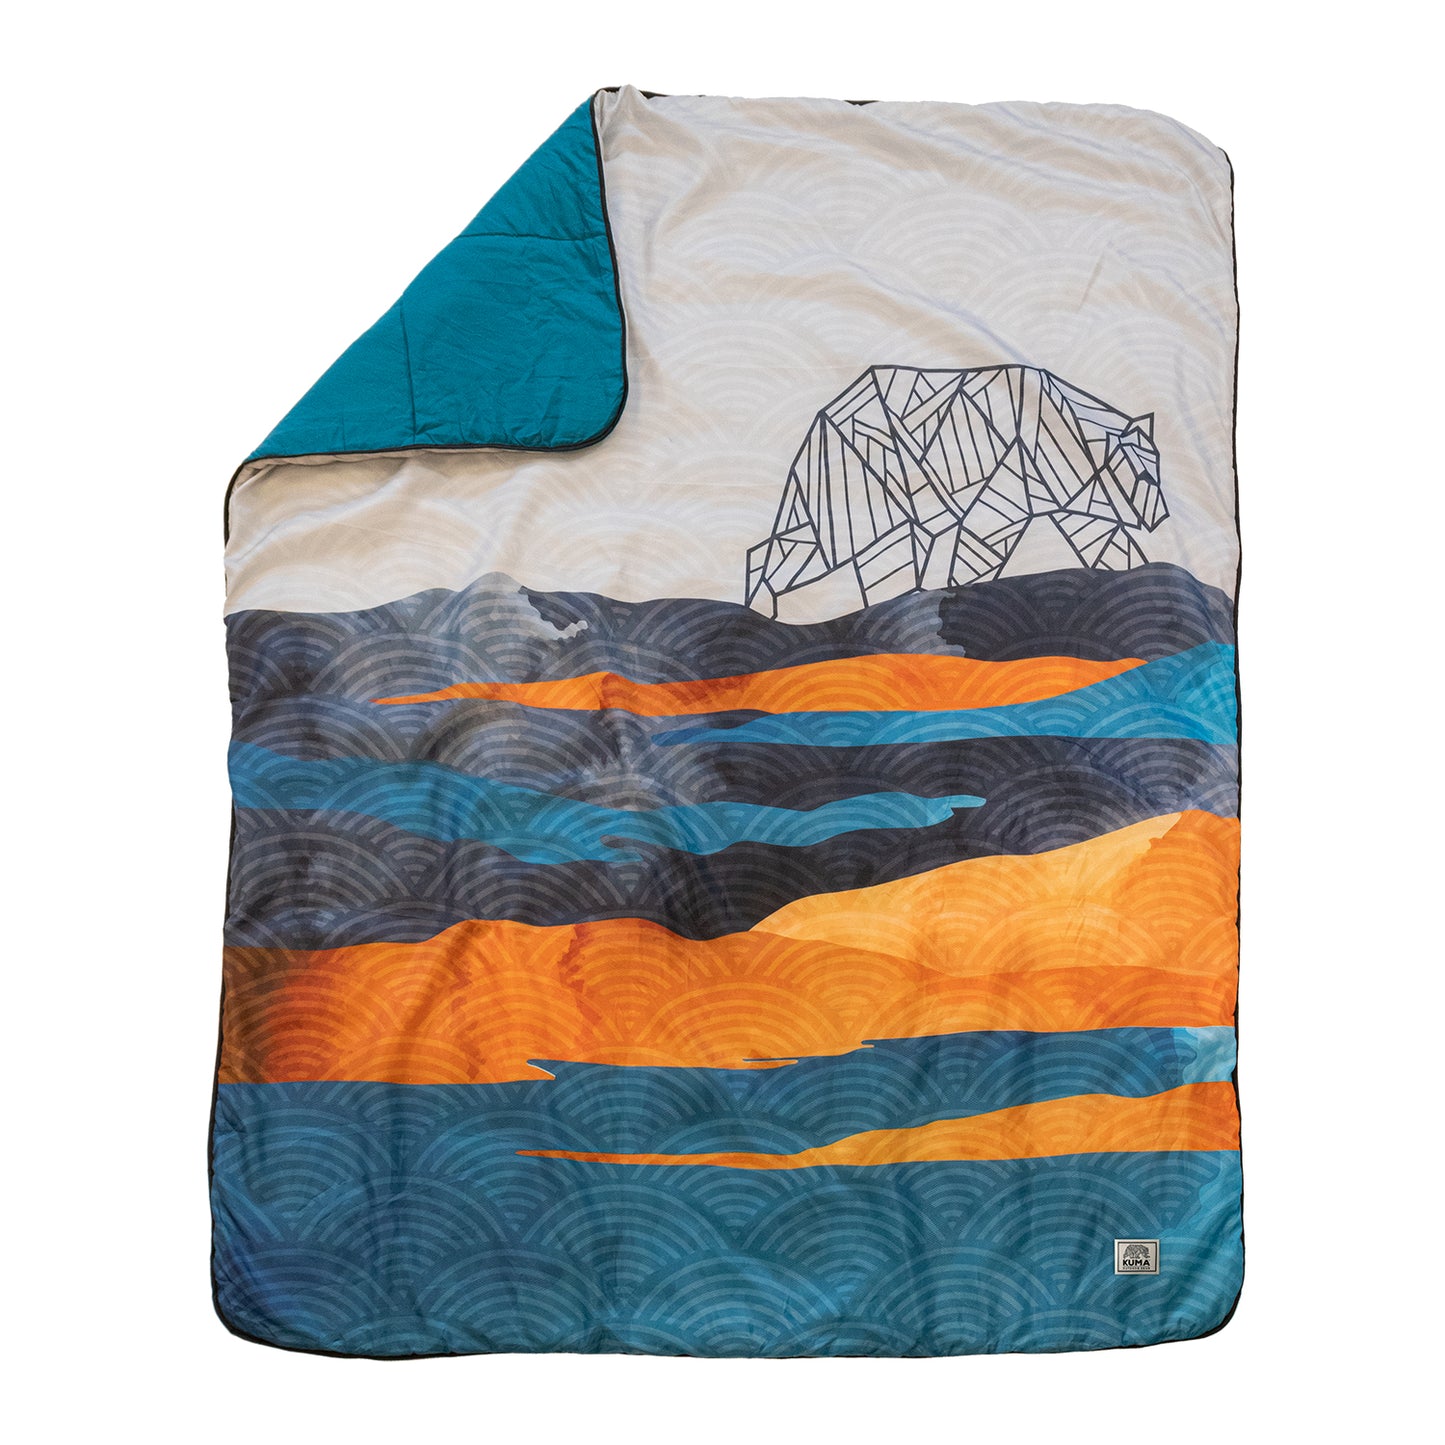 Kuma Kamp Blankets